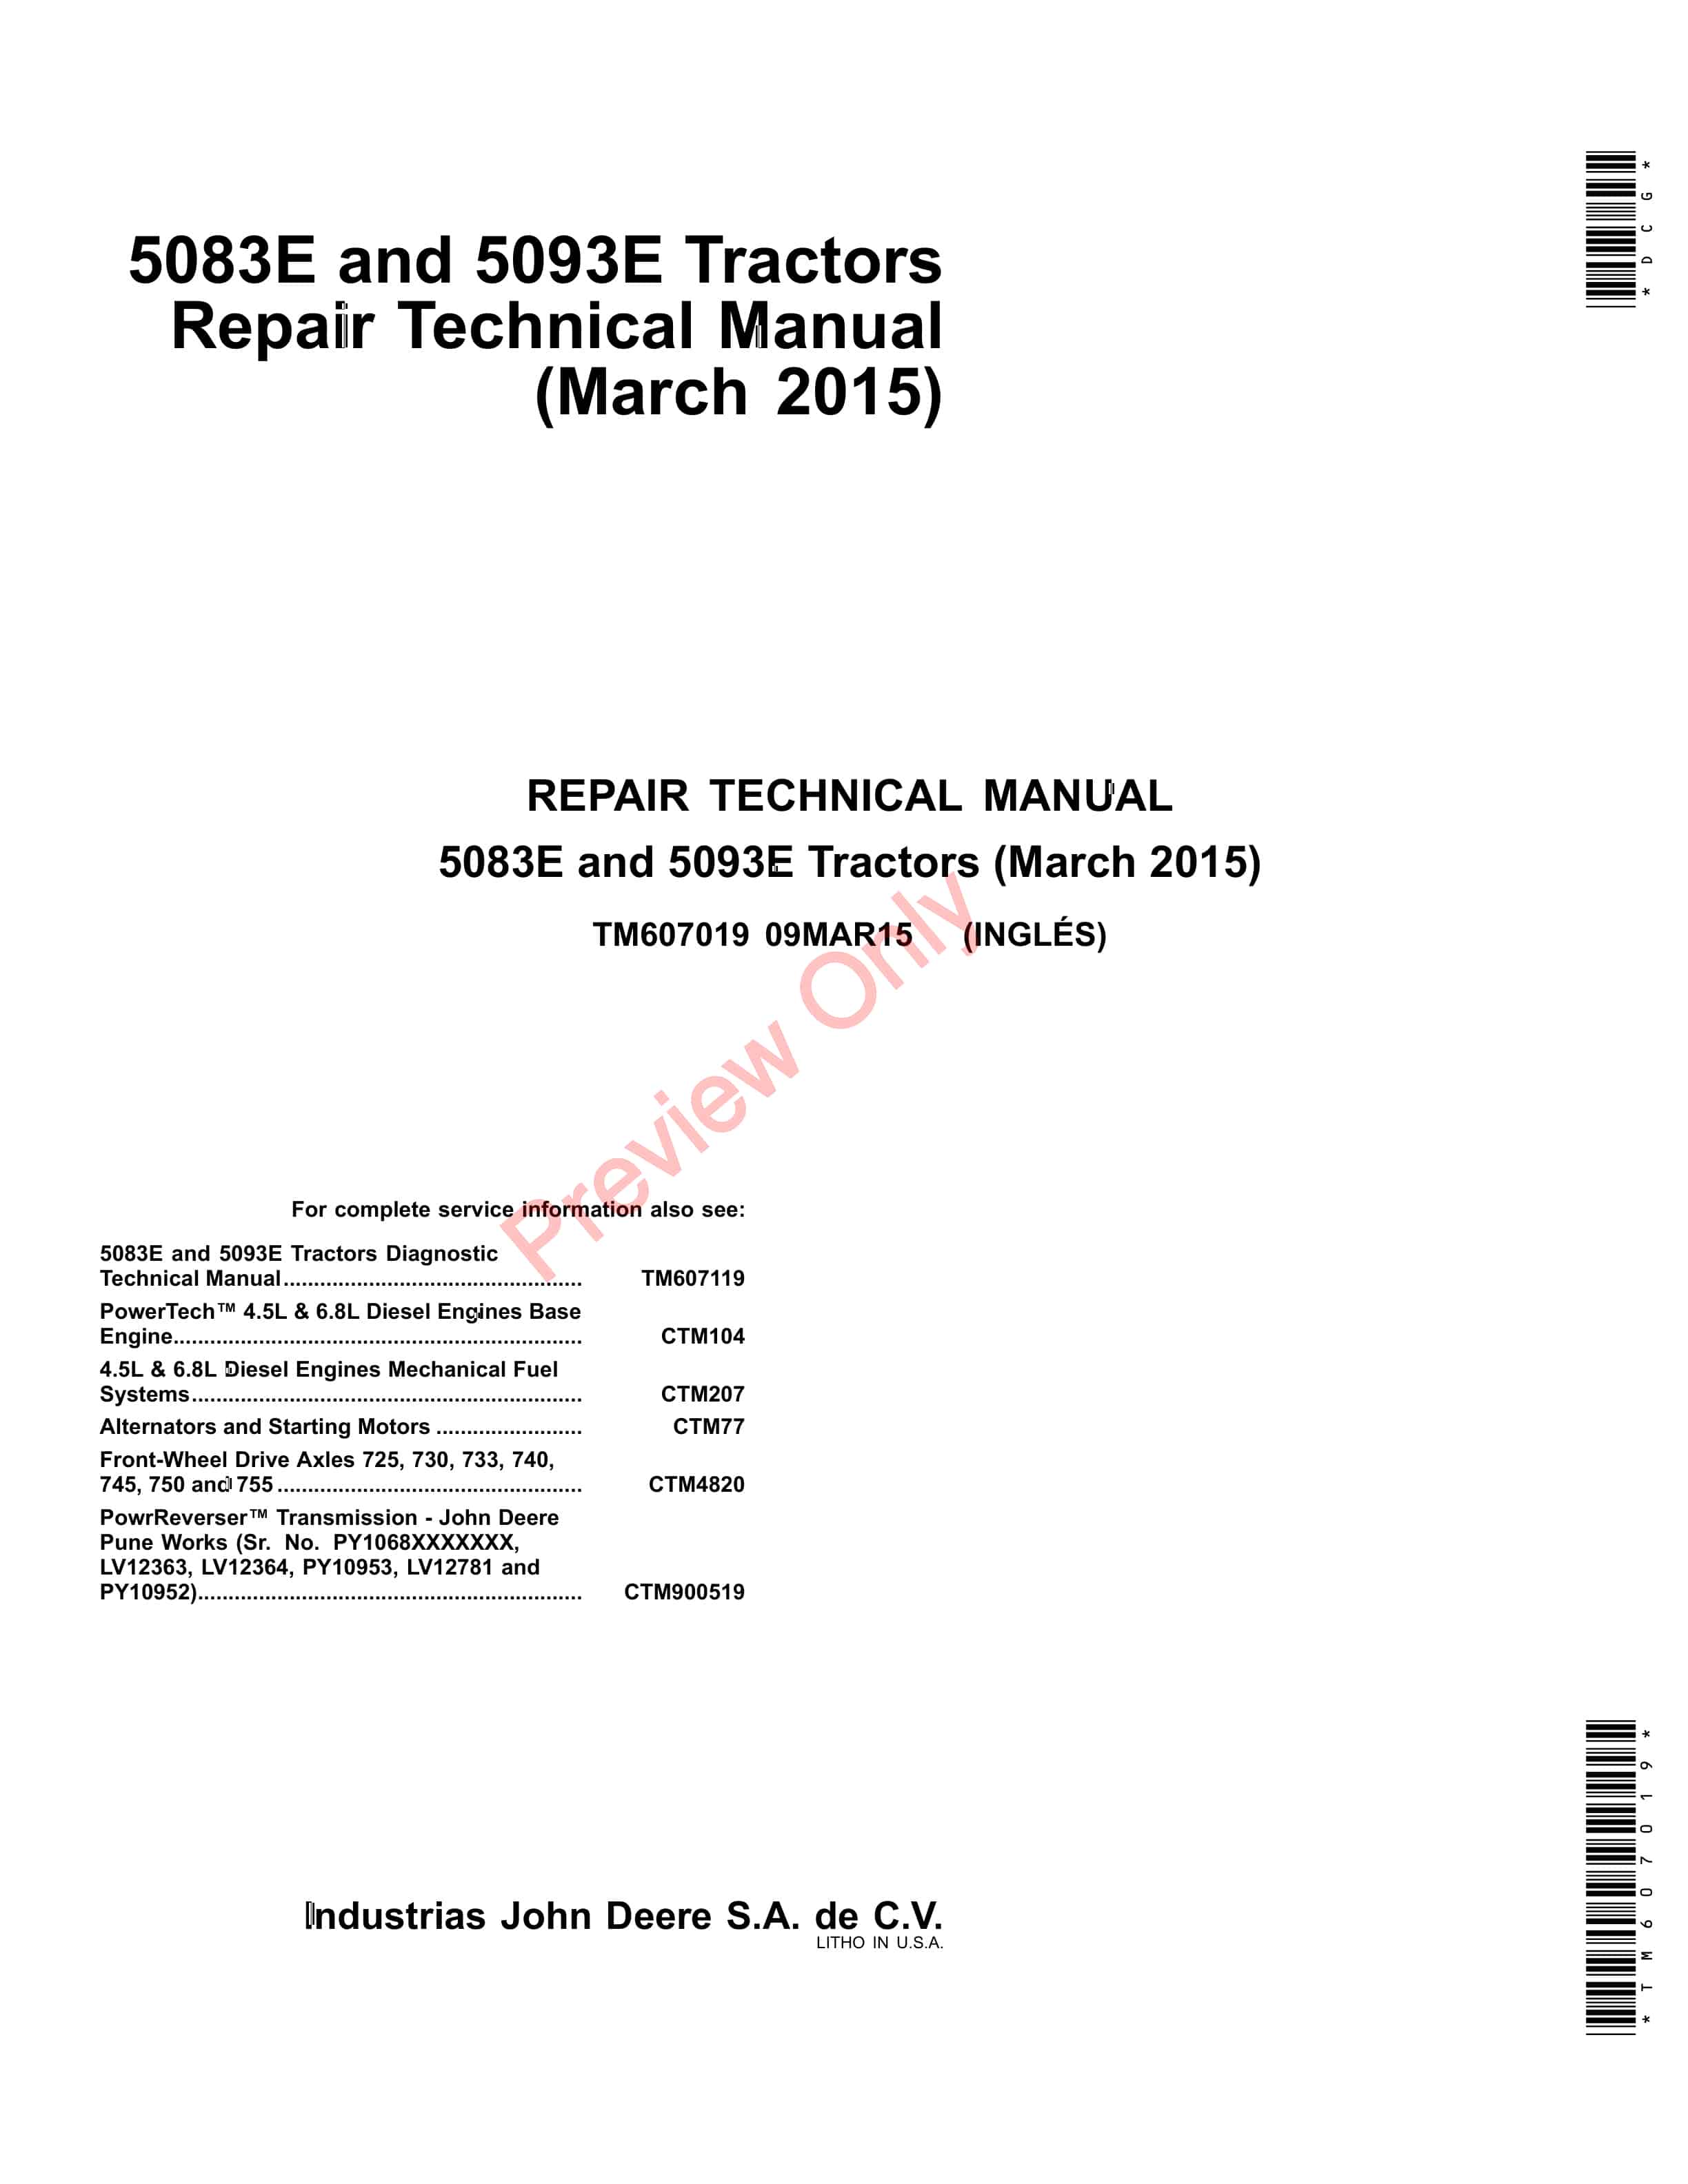 John Deere 5083E and 5093E Tractors Technical Manual TM607019 09MAR15-1